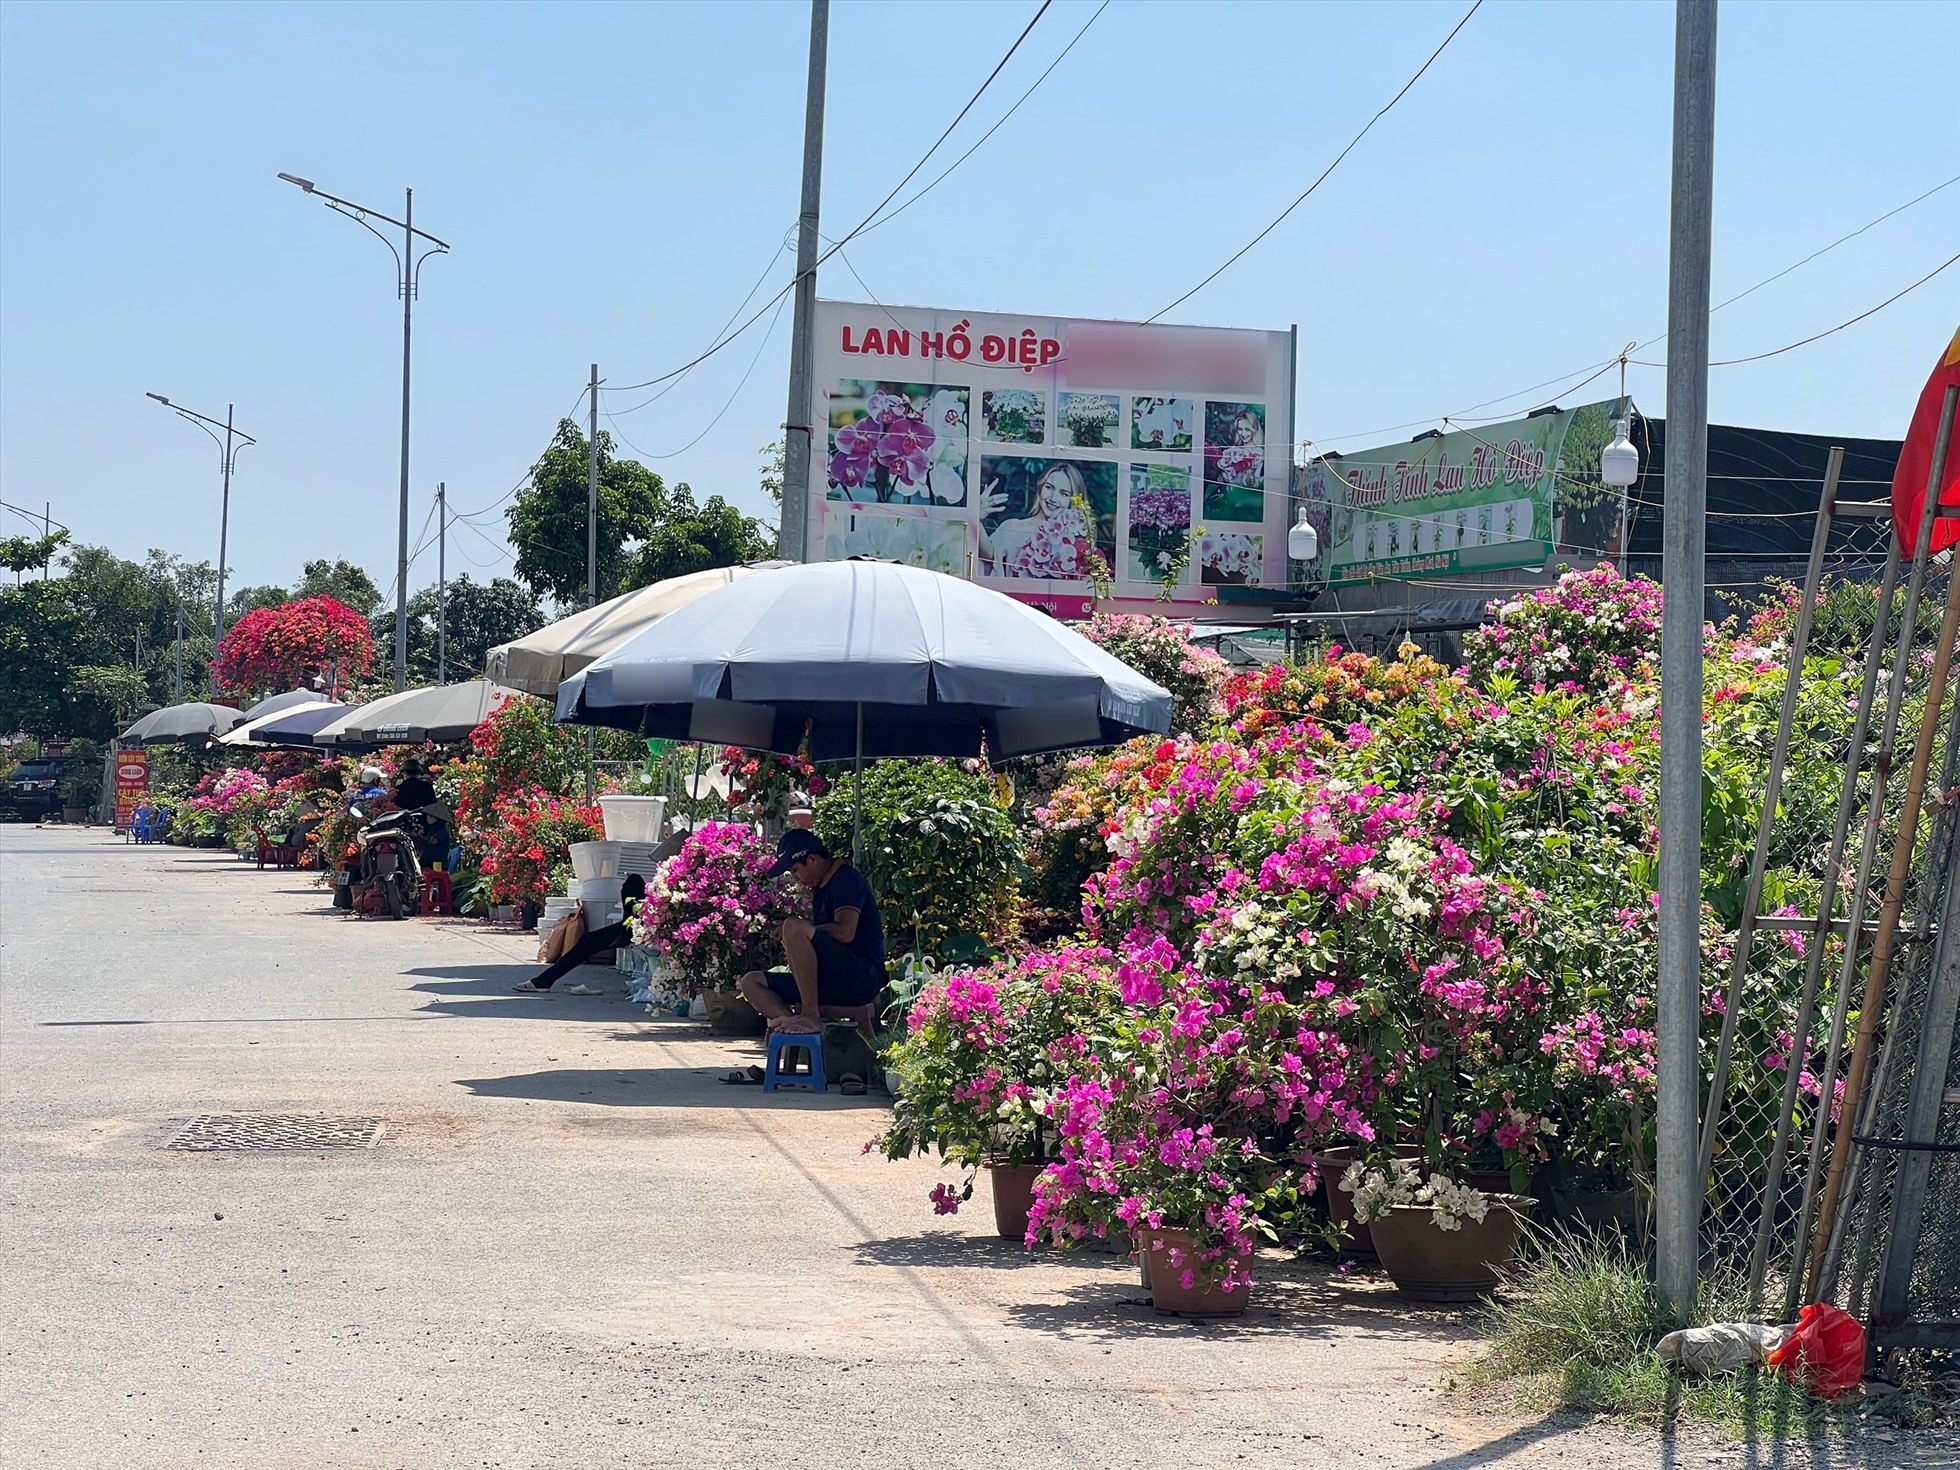 Hàng loạt cửa hàng bán cây cảnh, đồ gốm sứ “mọc” lên tại khu vực đất công viên. Ảnh: Nguyễn Thúy